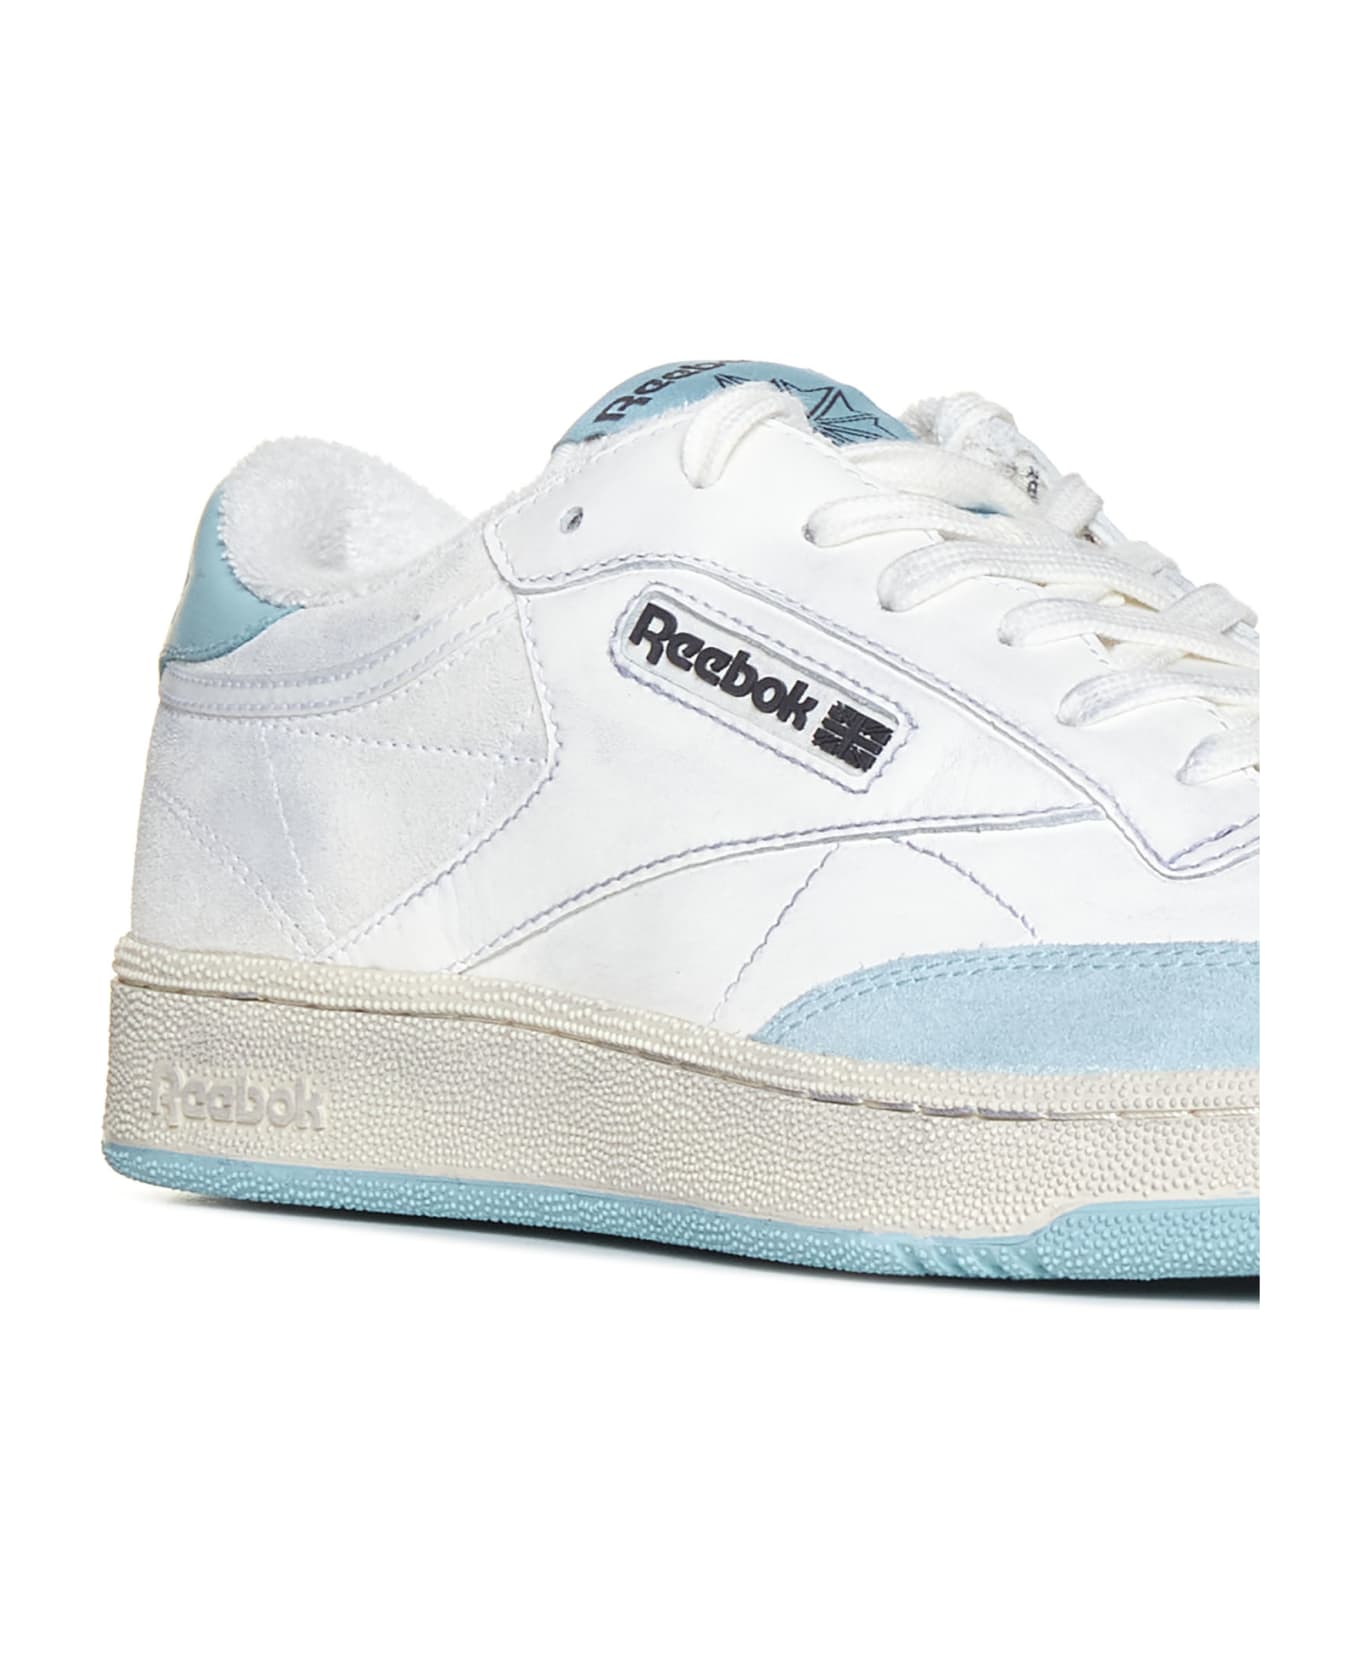 Reebok Sneakers - White light blue スニーカー